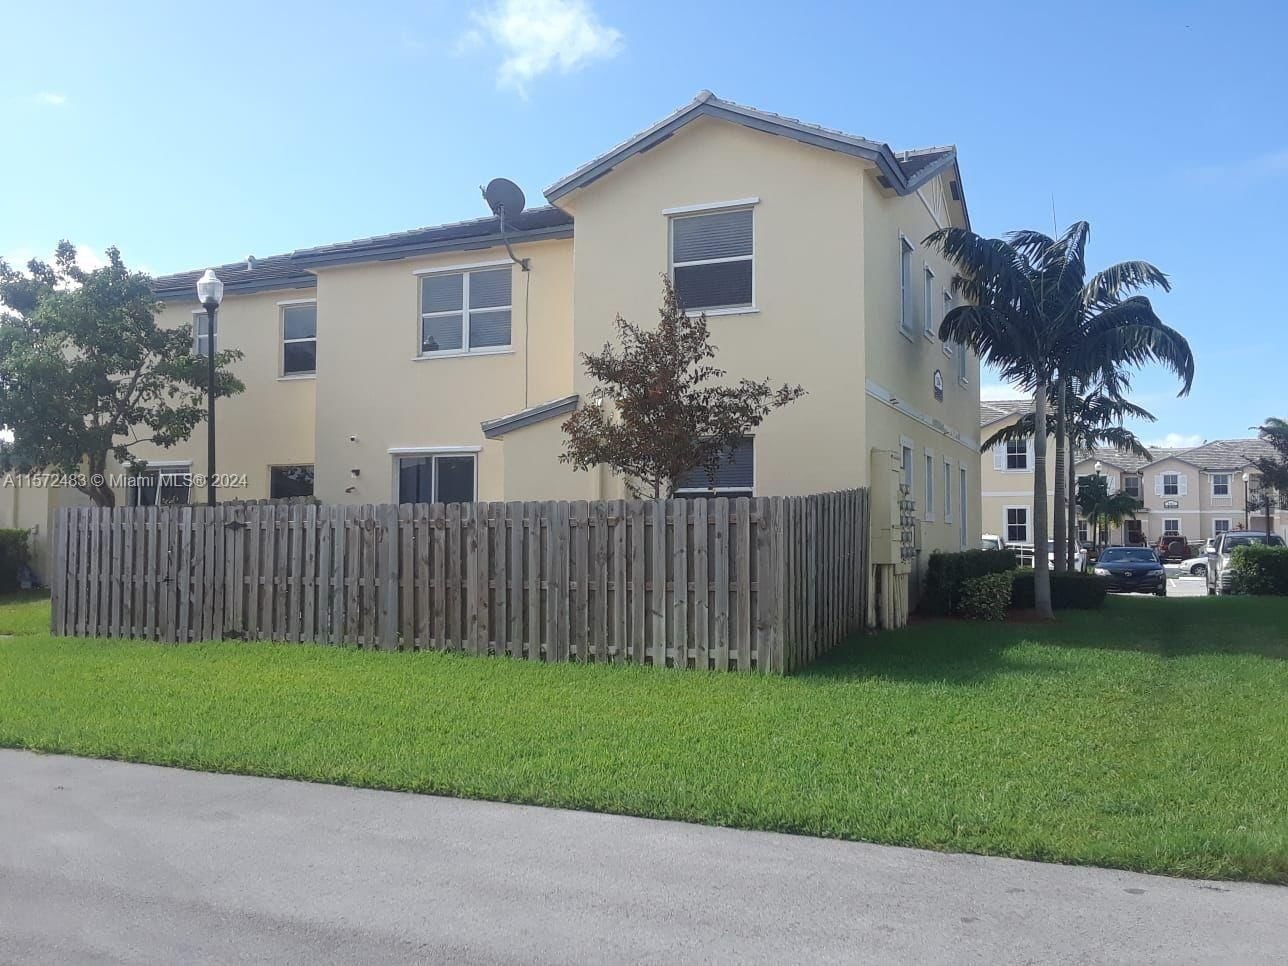 Real estate property located at 134 28th Ter #21, Miami-Dade County, FIJI CONDO NO 1, Homestead, FL